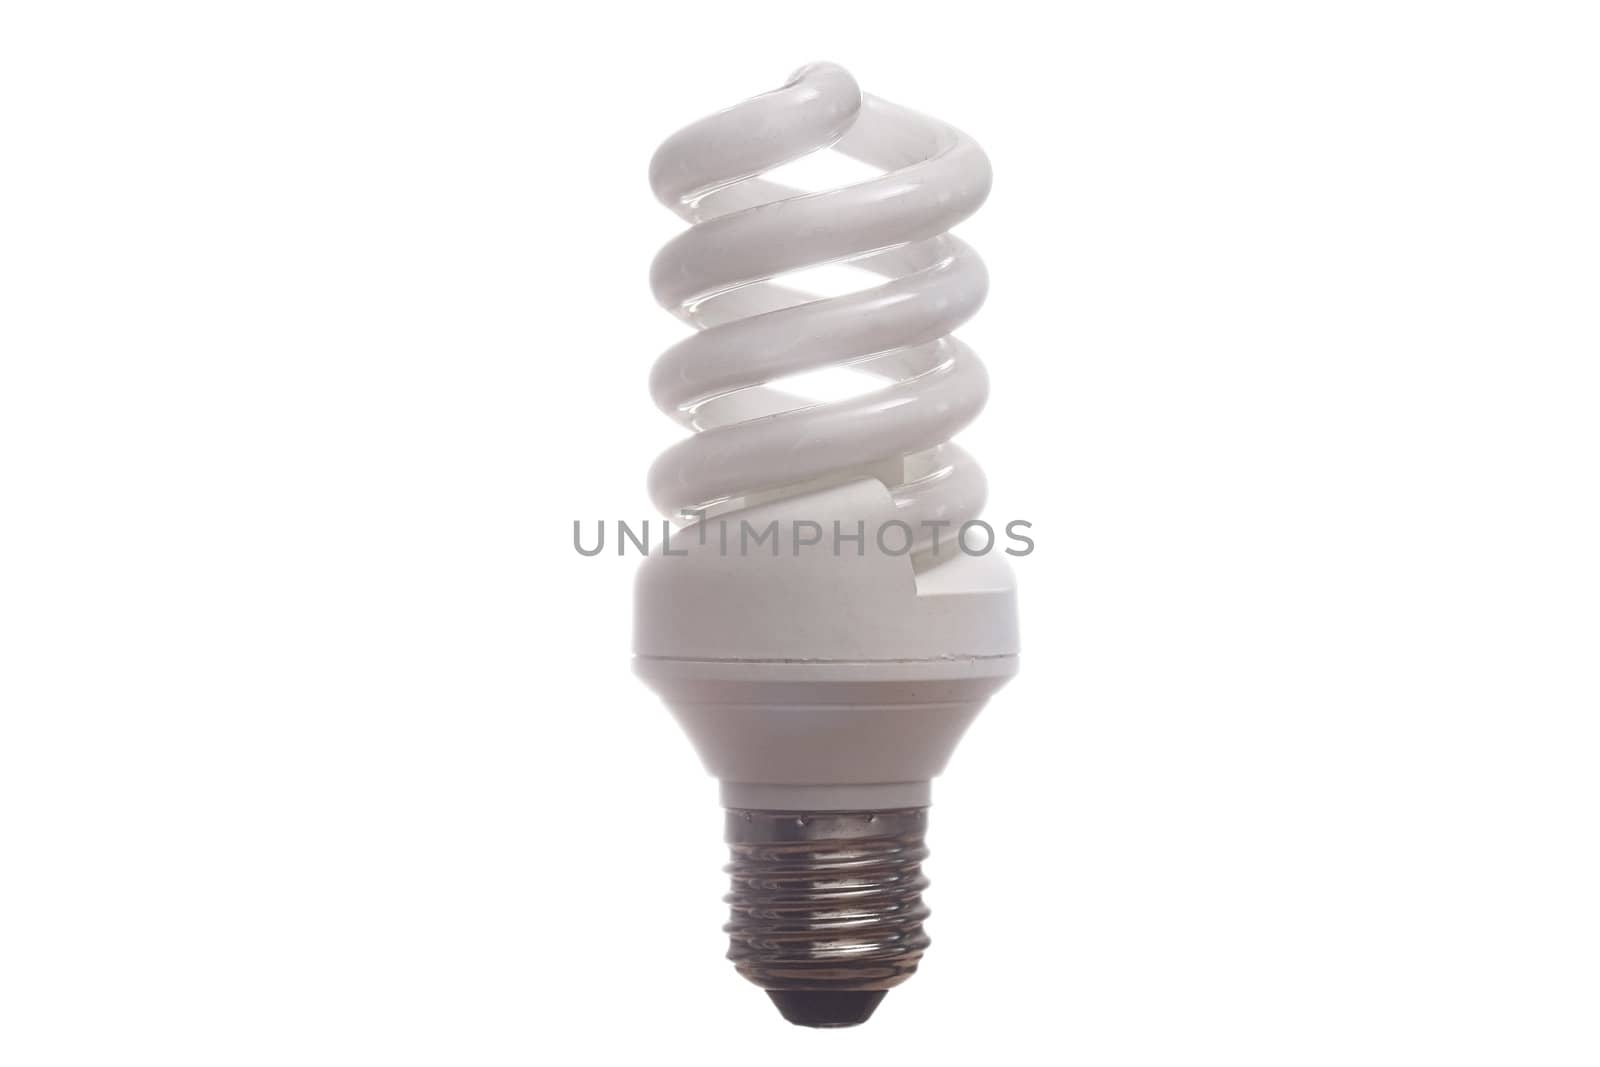 A new compact high efficiency fluorescent light bulb.